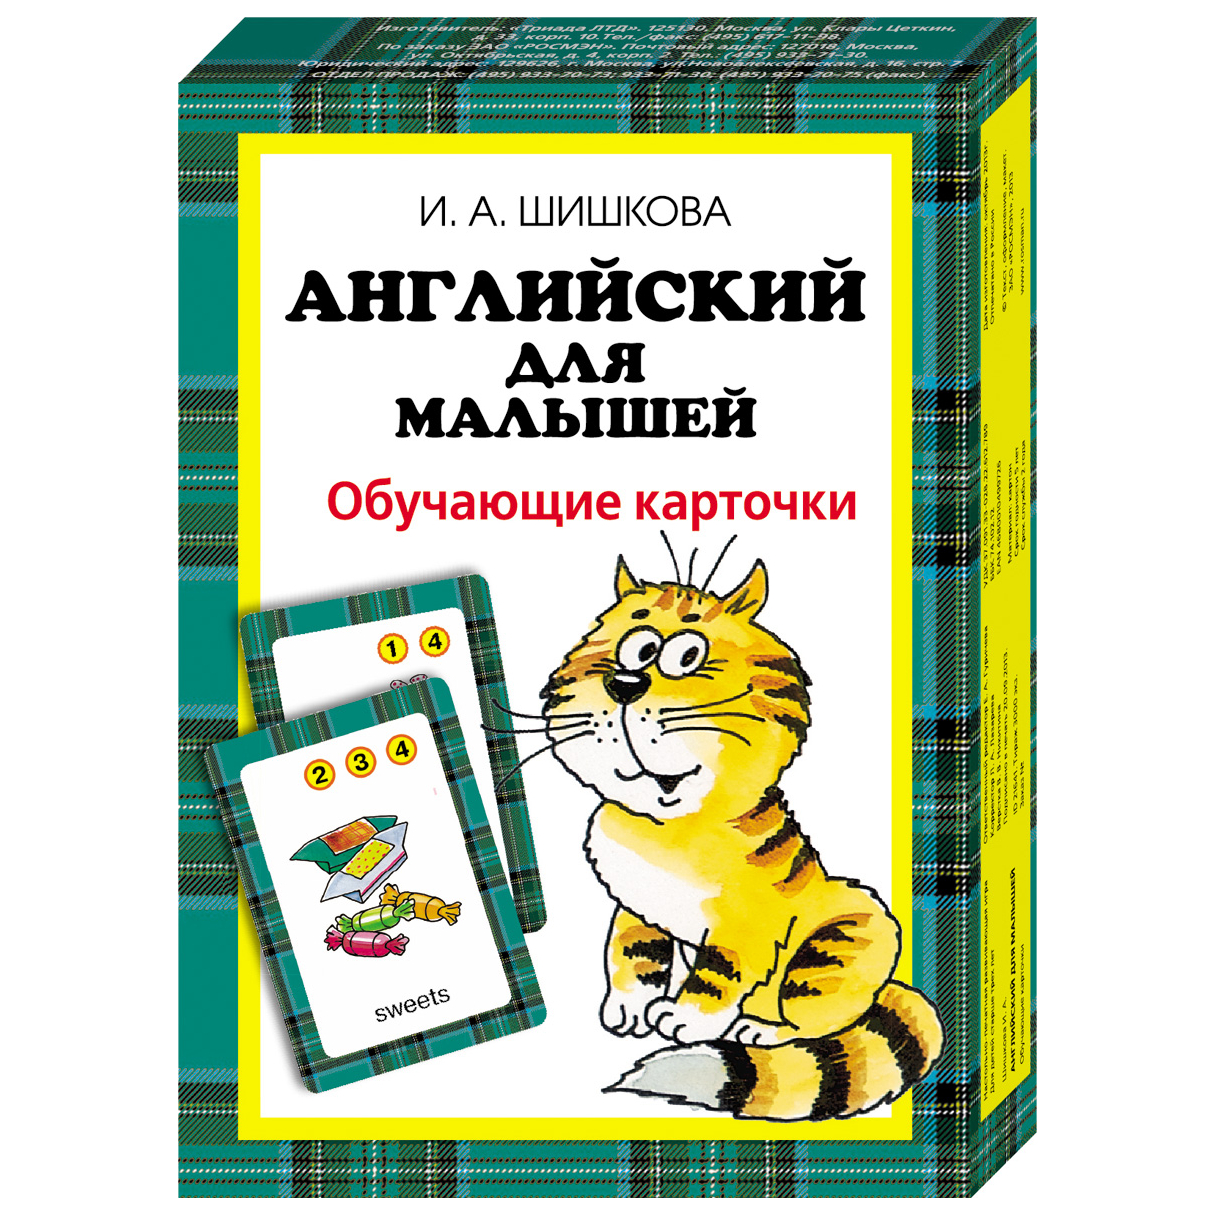 Обучающие карточки: Английский для малышей, Шишкова И.А.